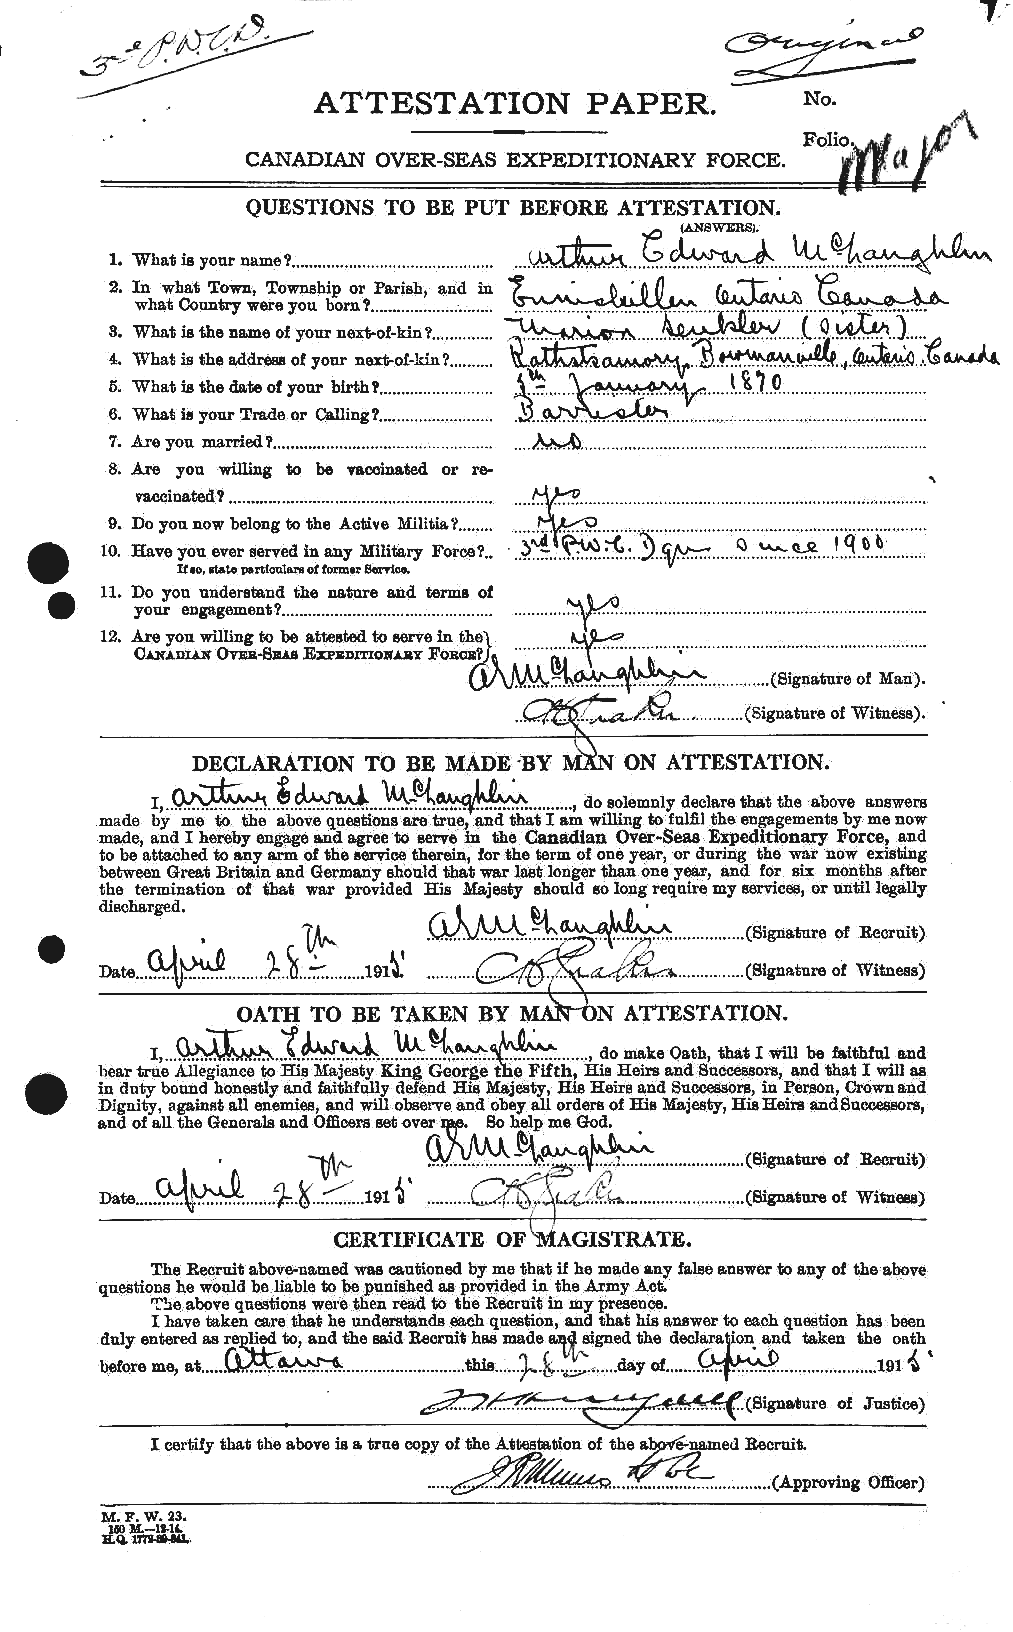 Dossiers du Personnel de la Première Guerre mondiale - CEC 536166a